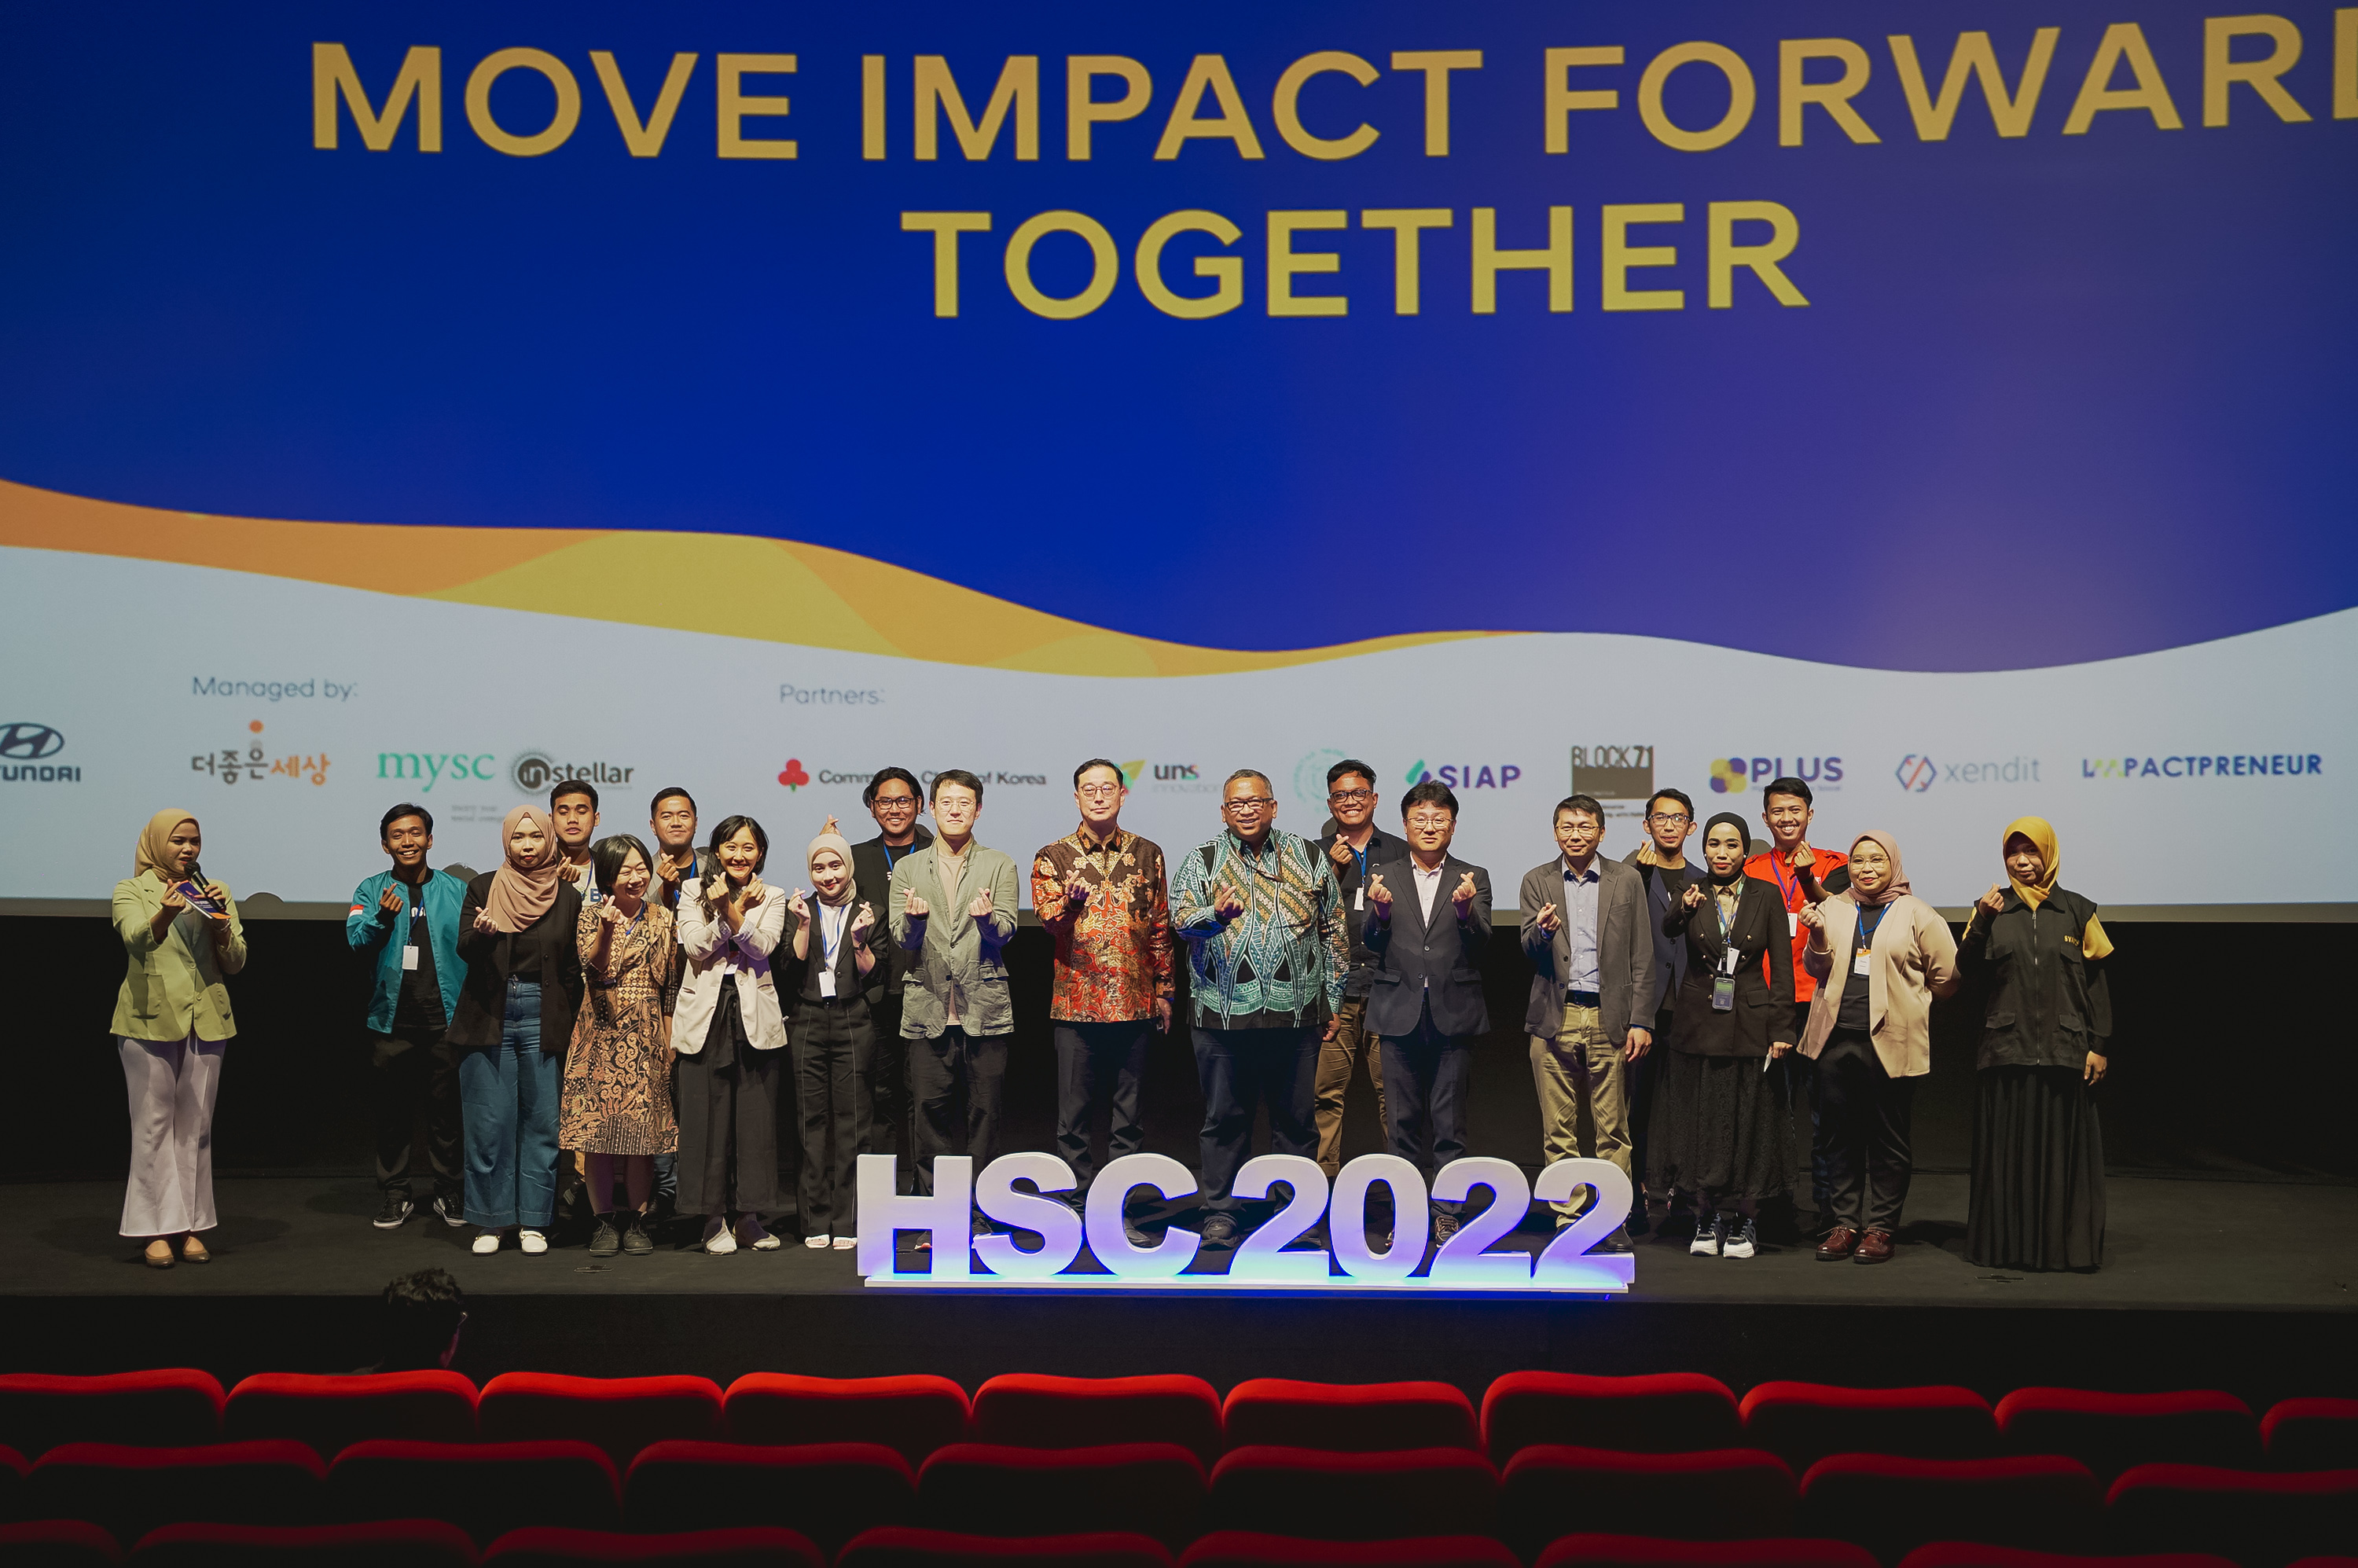 Instellar - Hyundai Startup Challenge 2022 Demo Day